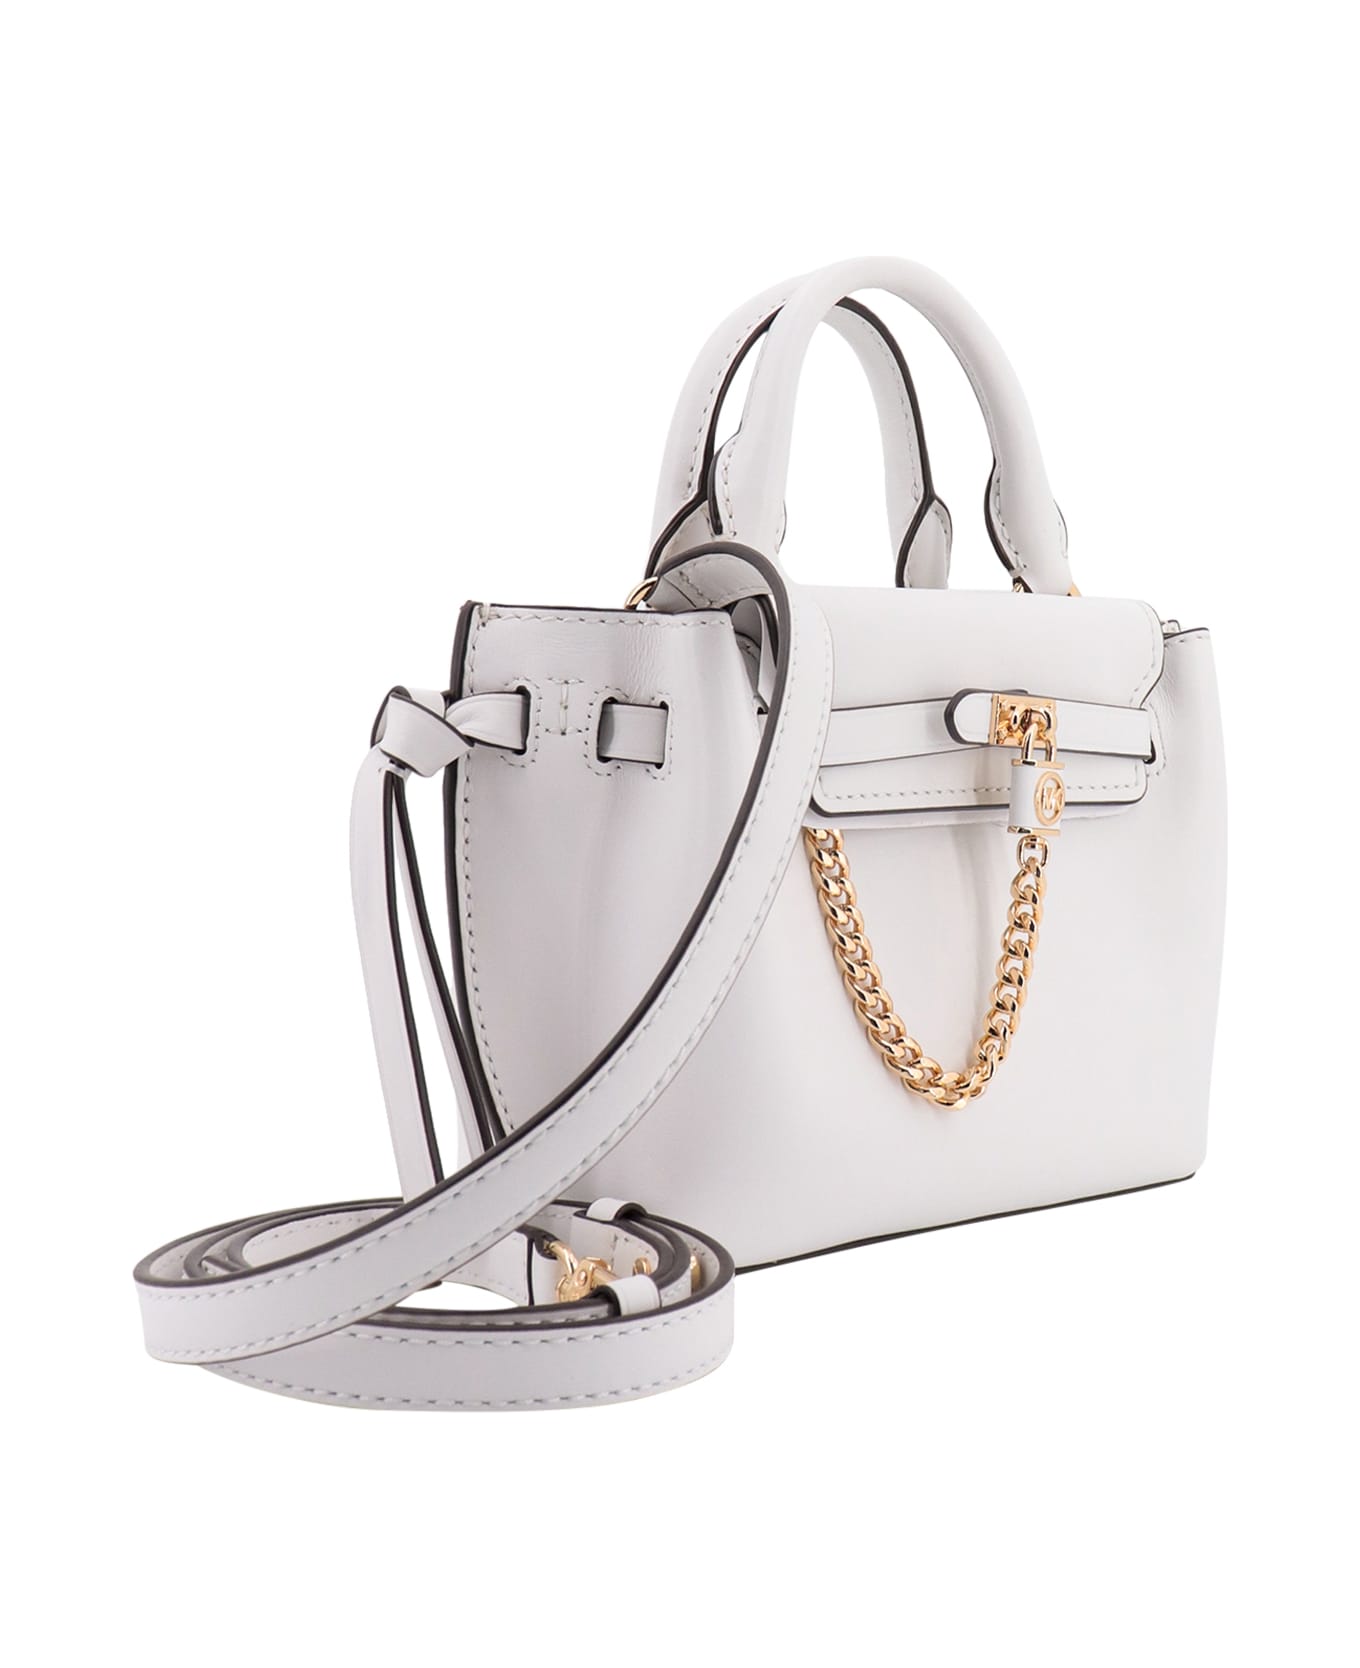 Michael Kors Handbag - White